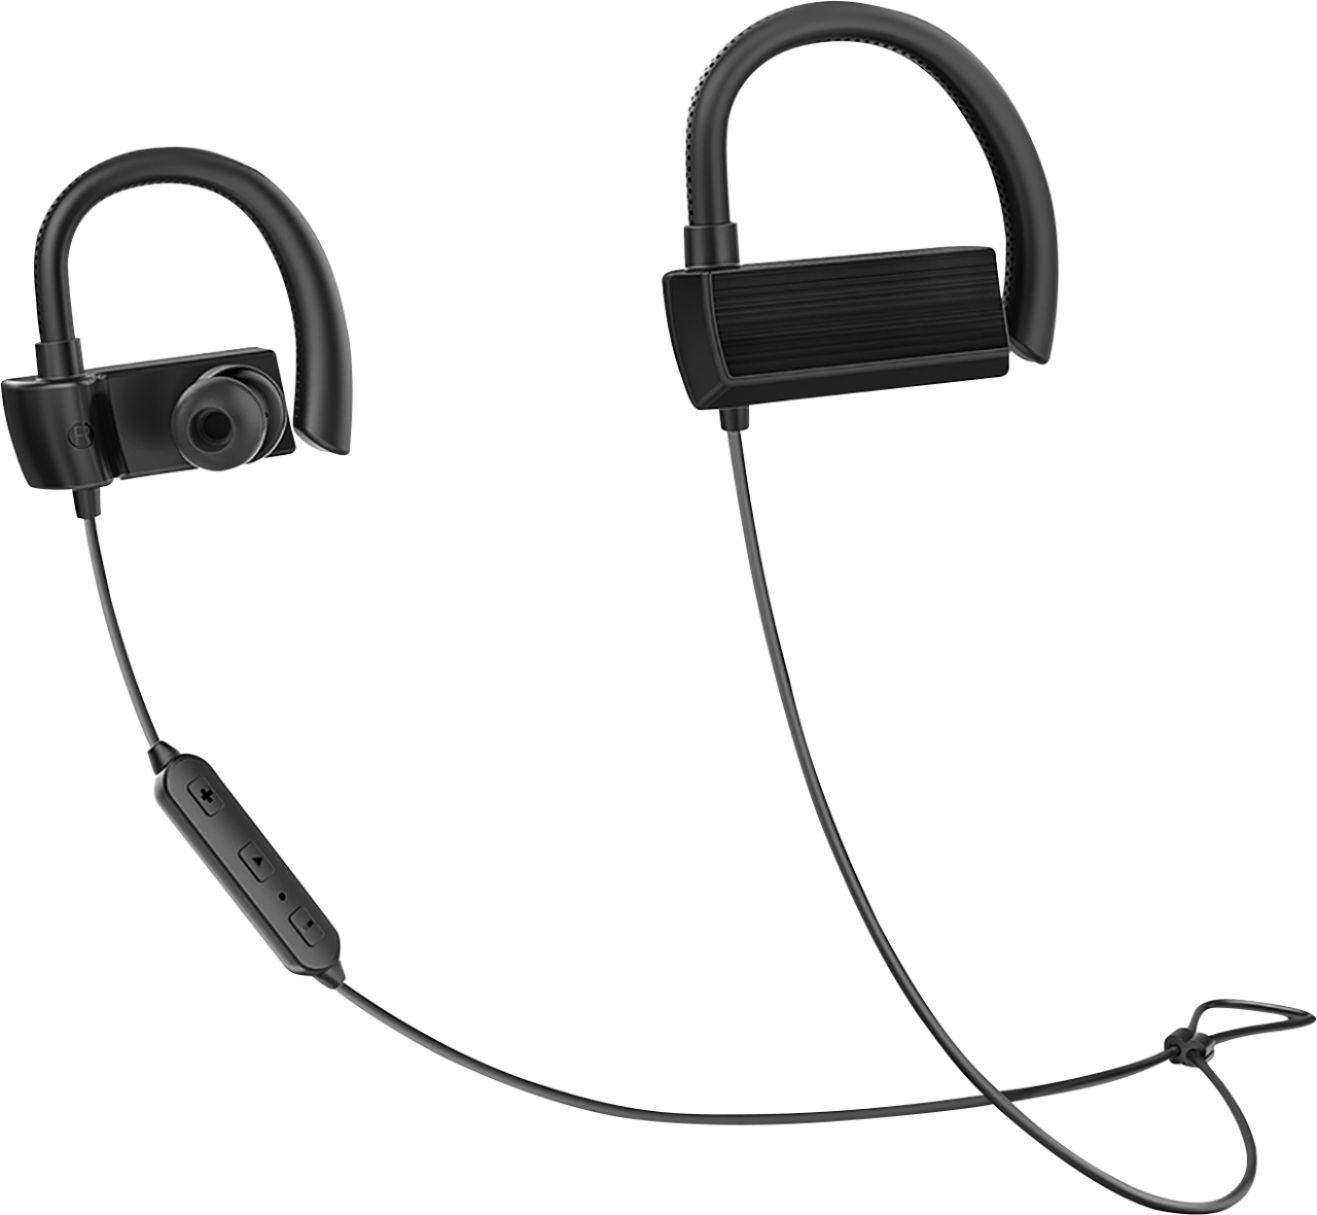 TaoTronics - TT-BH059BB Wireless In-Ear Headphones - Black